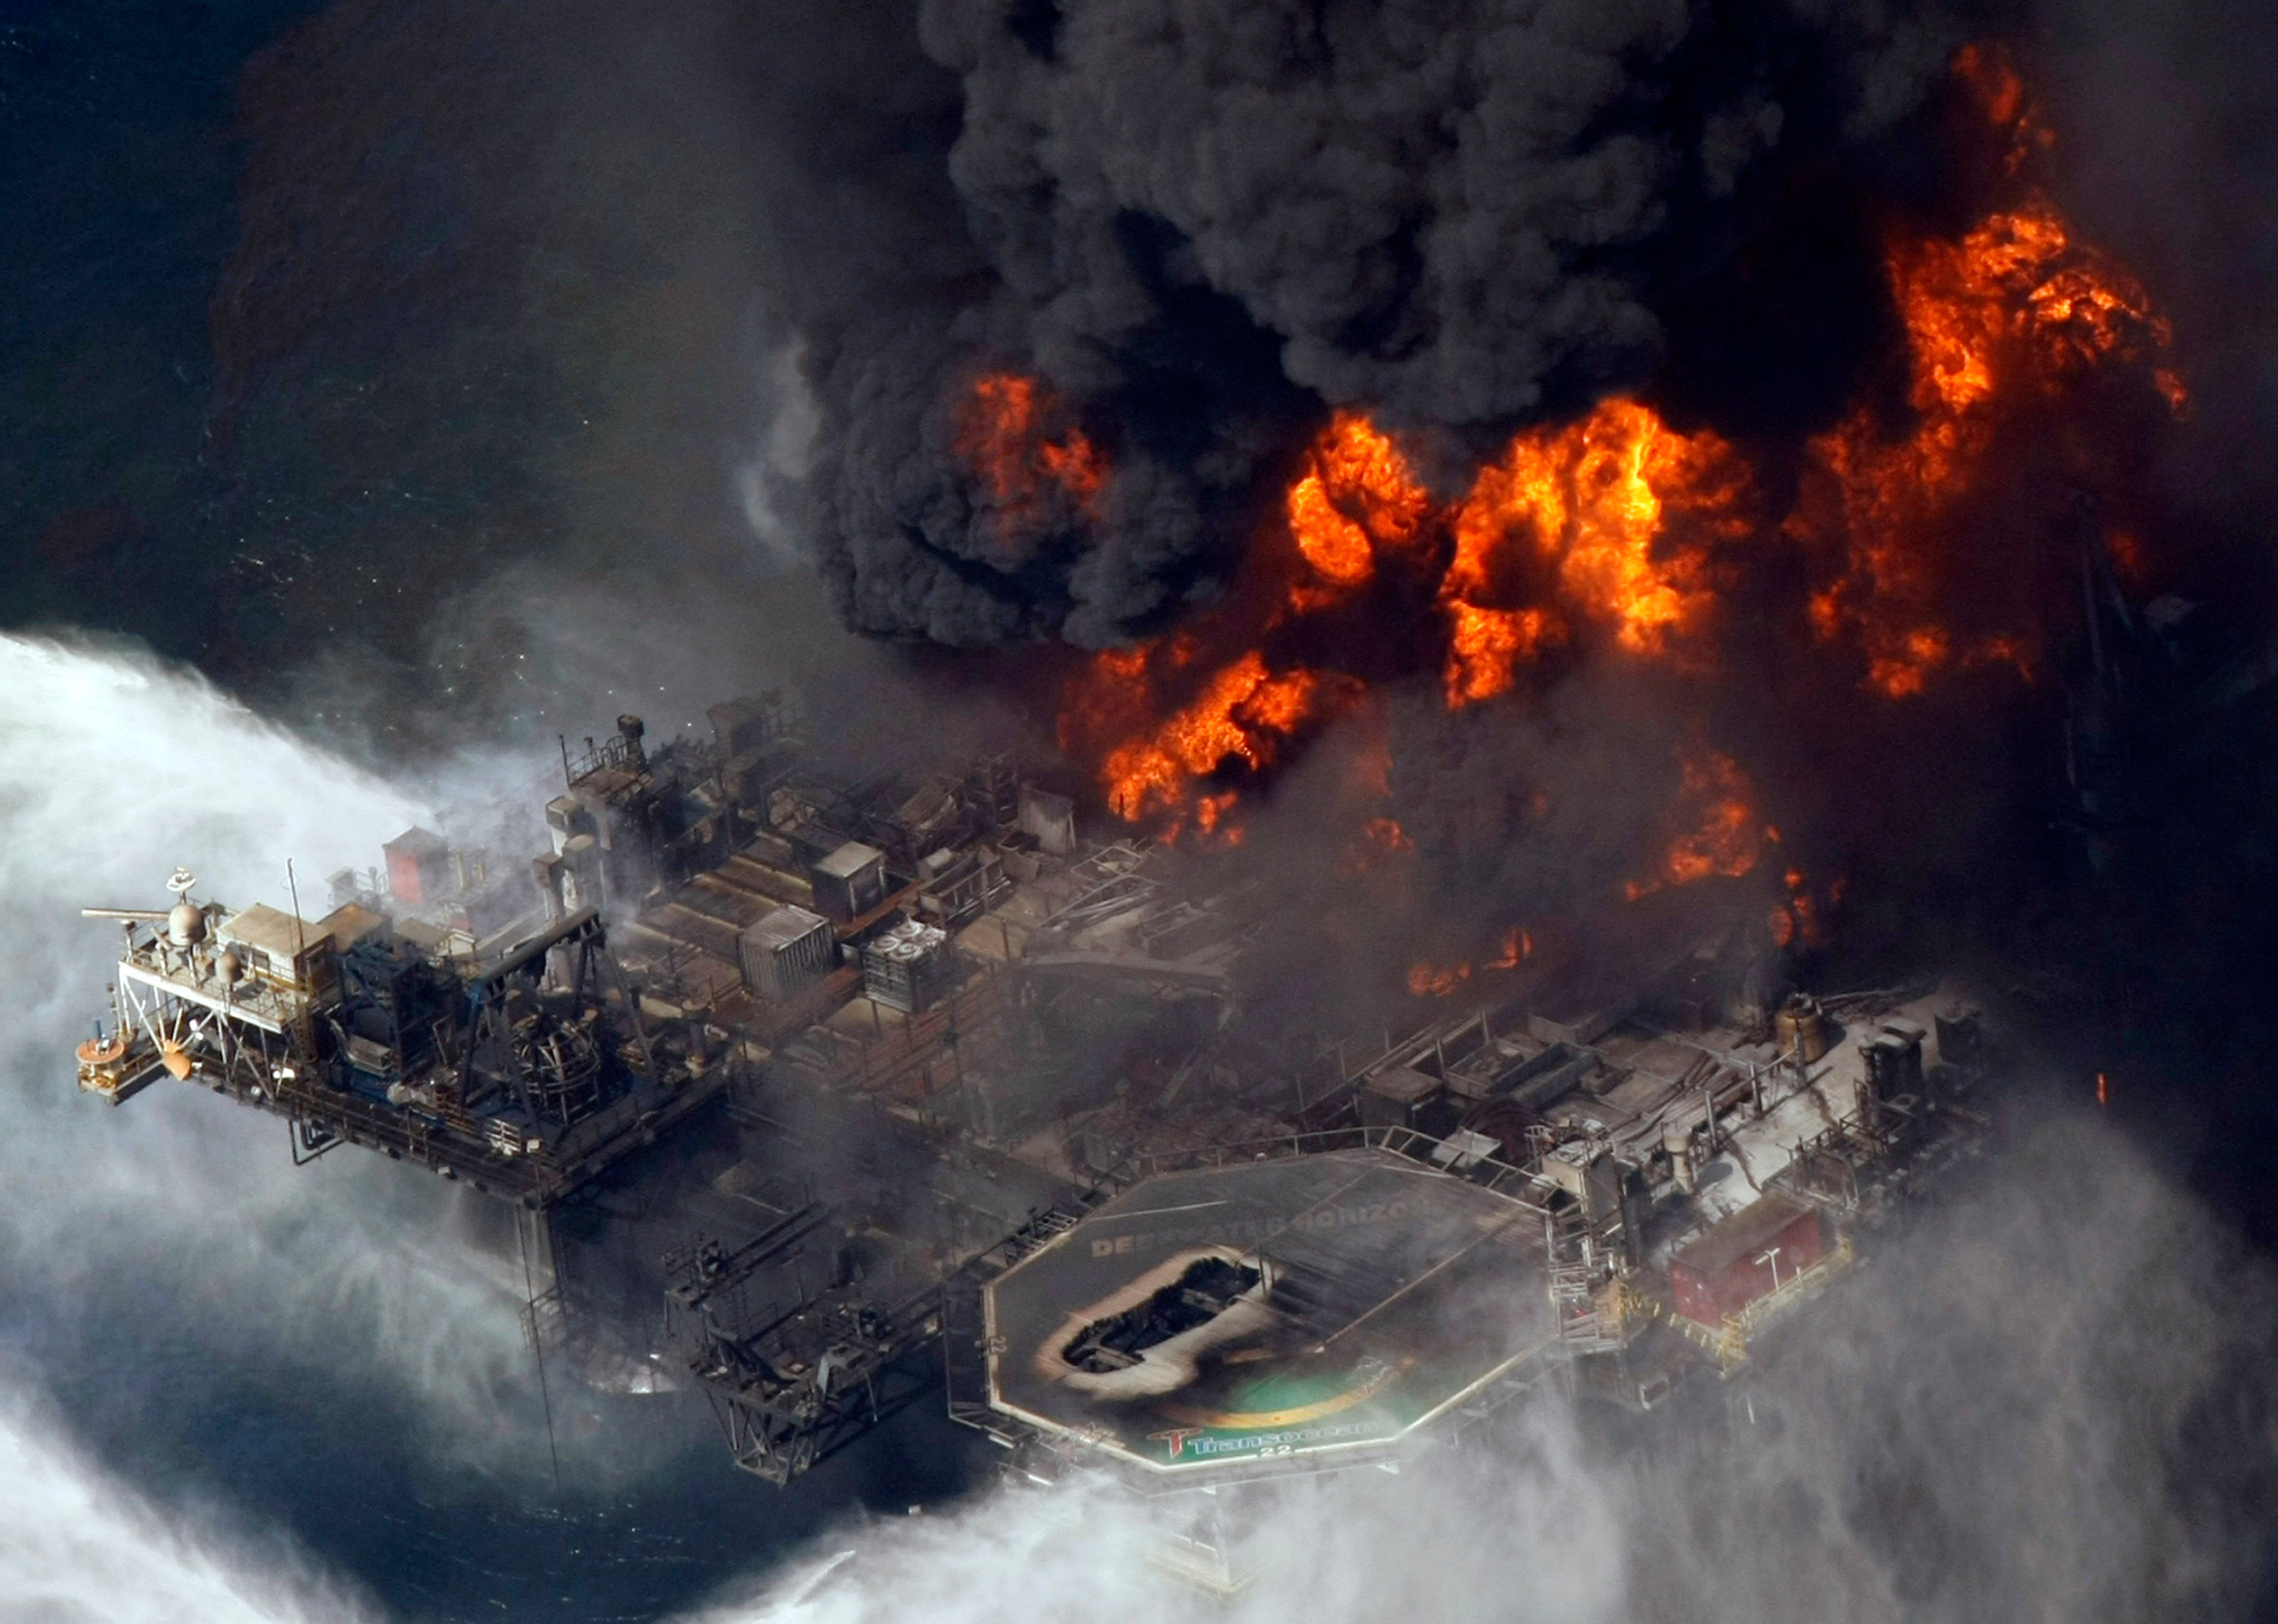 После аварий катастроф. Взрыв в мексиканском заливе авария на нефтяной платформе Deepwater Horizon. Взрыв нефтяной платформы Deepwater Horizon - 20 апреля 2010 года. Катастрофа Deepwater Horizon в мексиканском заливе. Взрыв нефтяной платформы Deepwater Horizon в мексиканском заливе 2010.